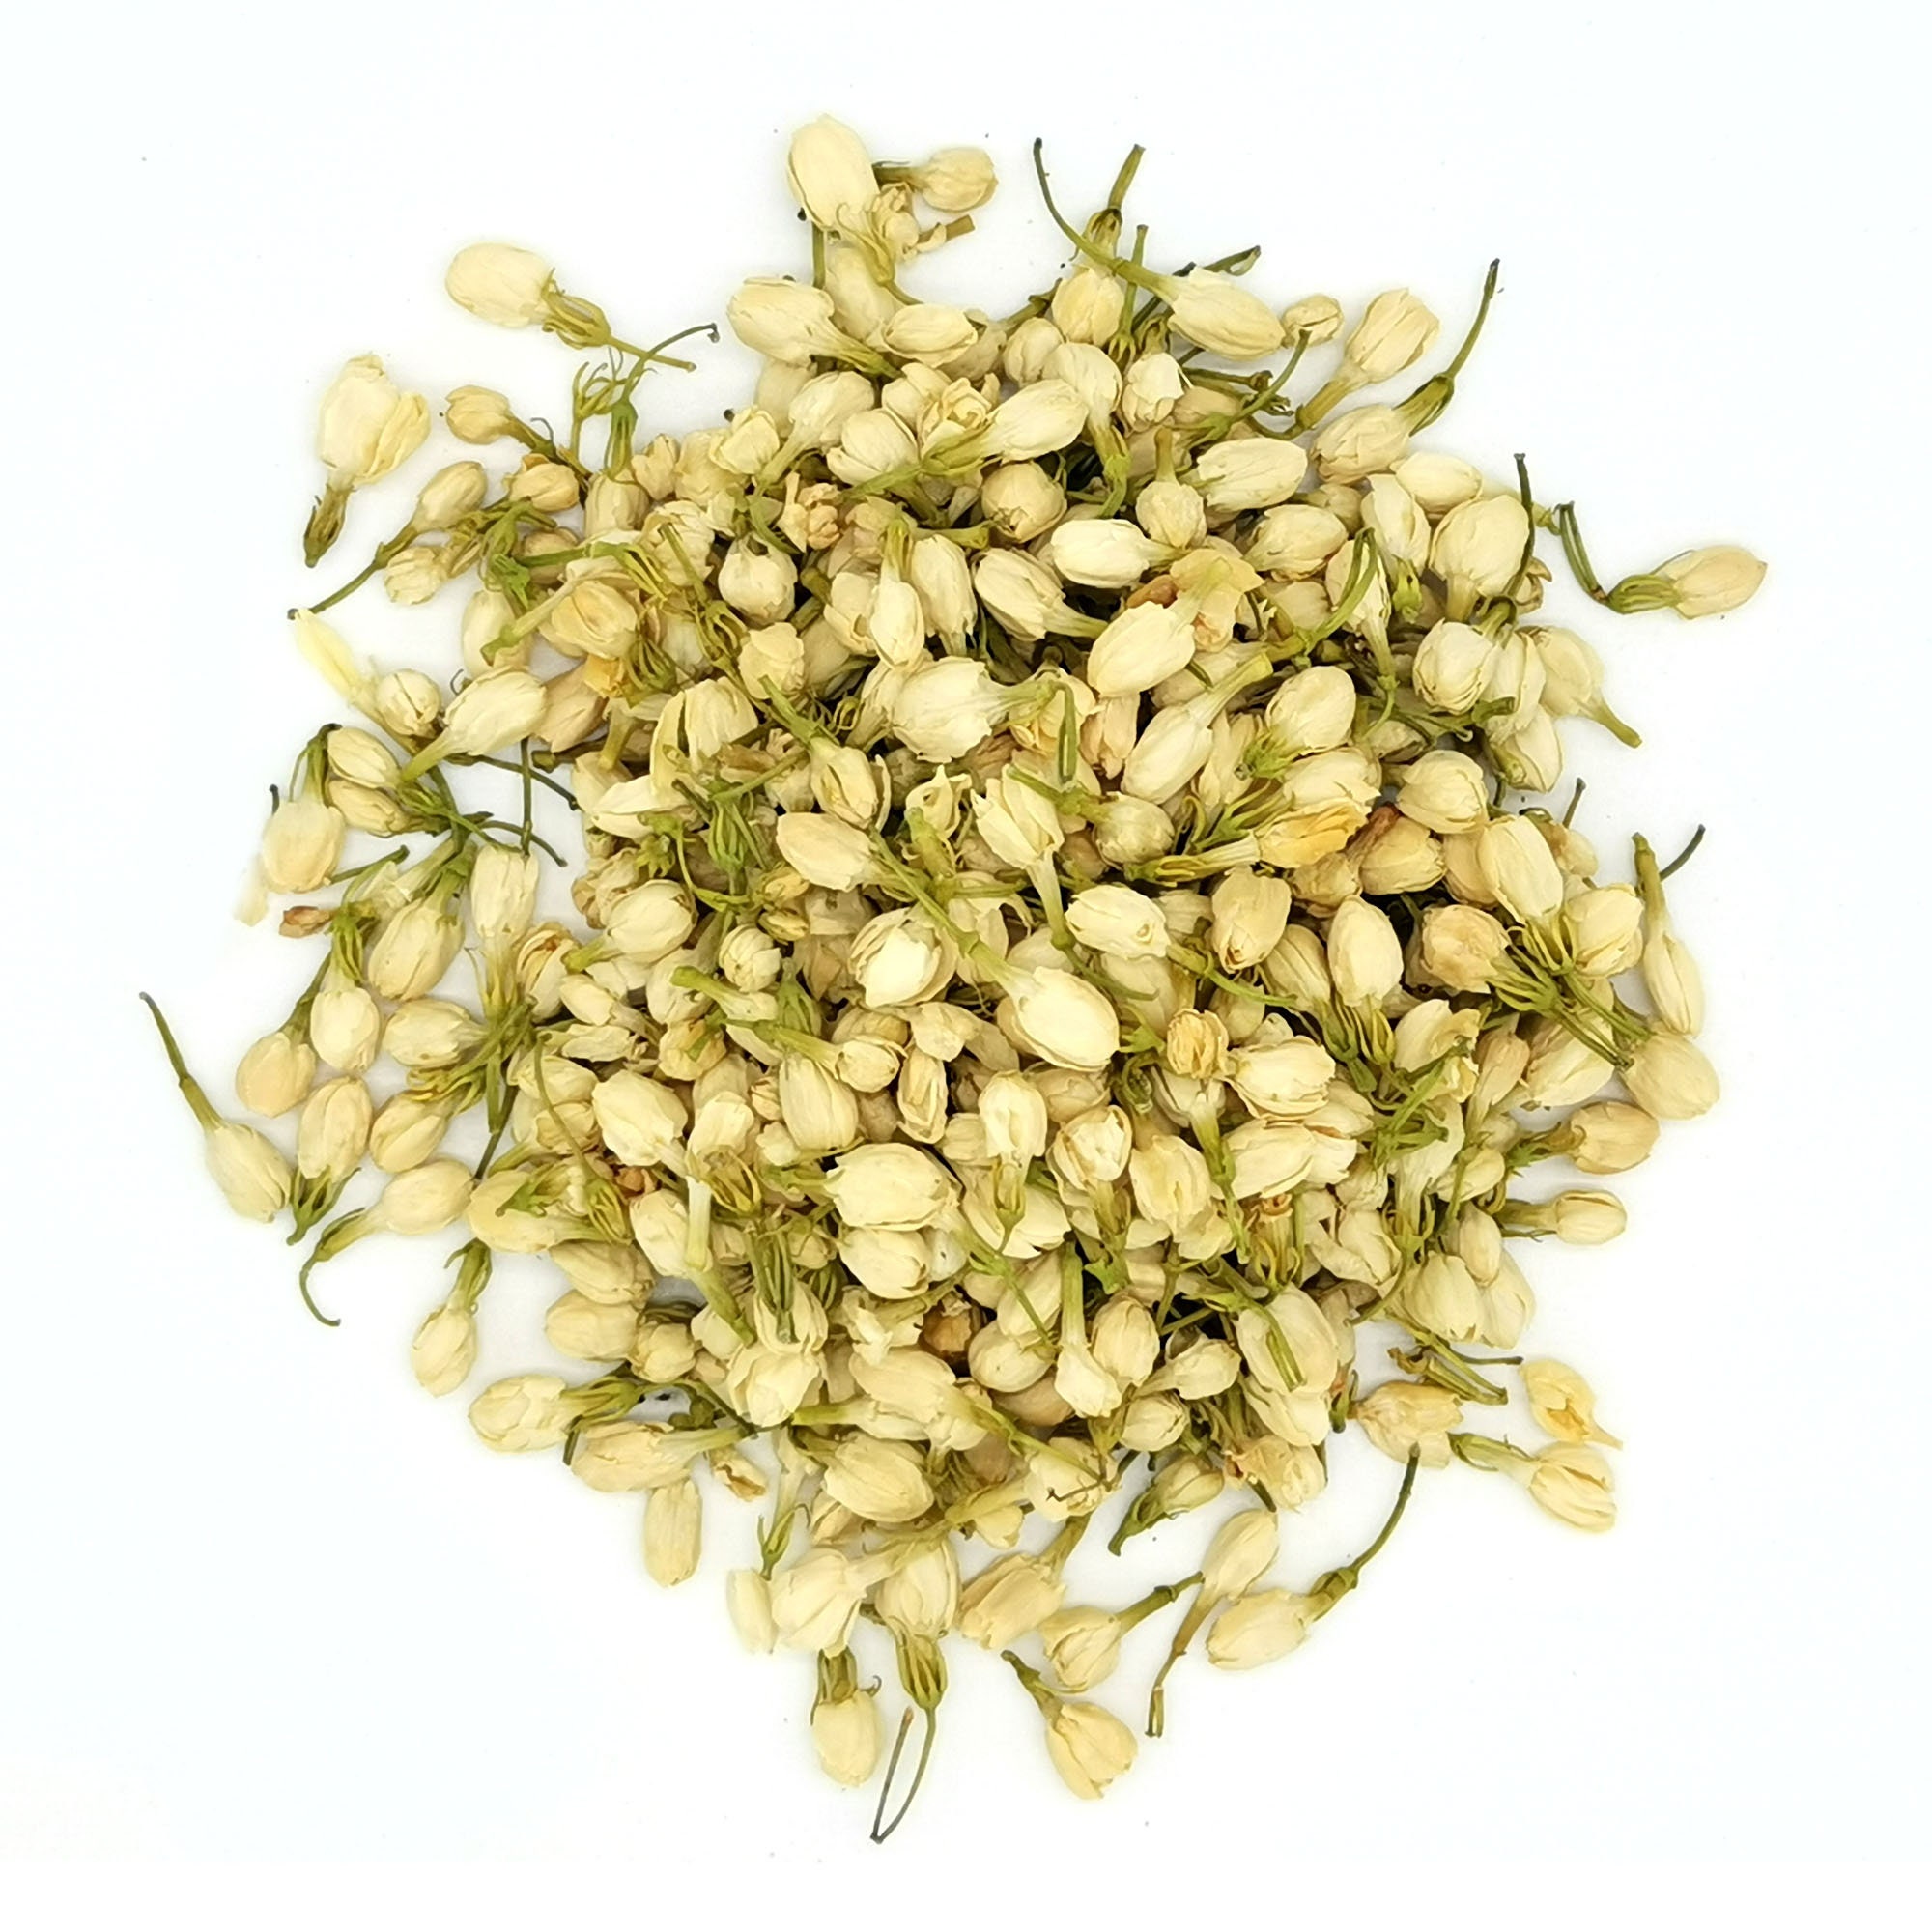 NY SPICE SHOP Jasmine Dried Flowers - Dried Buds - Herb Tea - 4 Oz. 